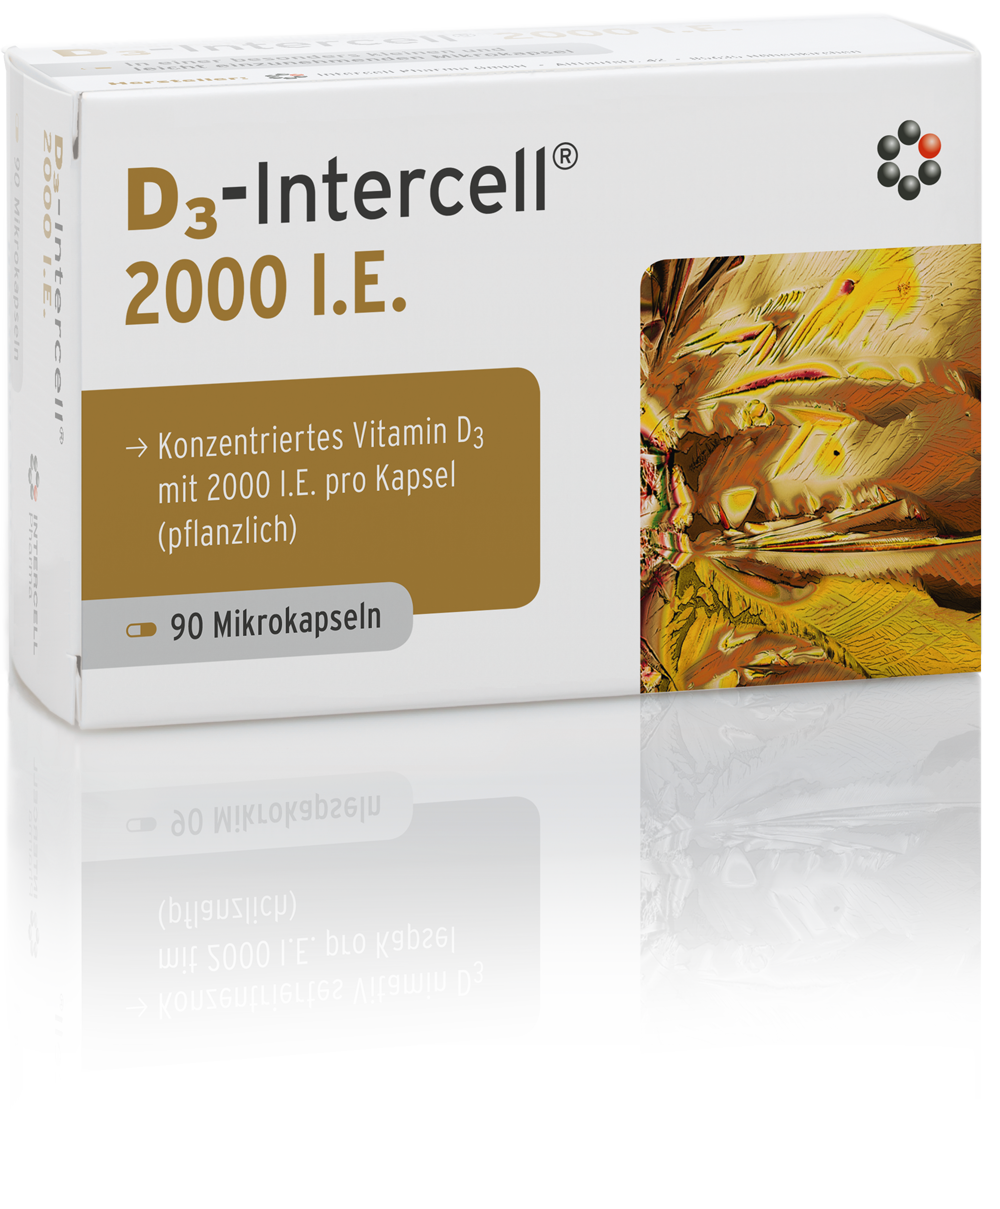 D3-Intercell 2000 I.E.